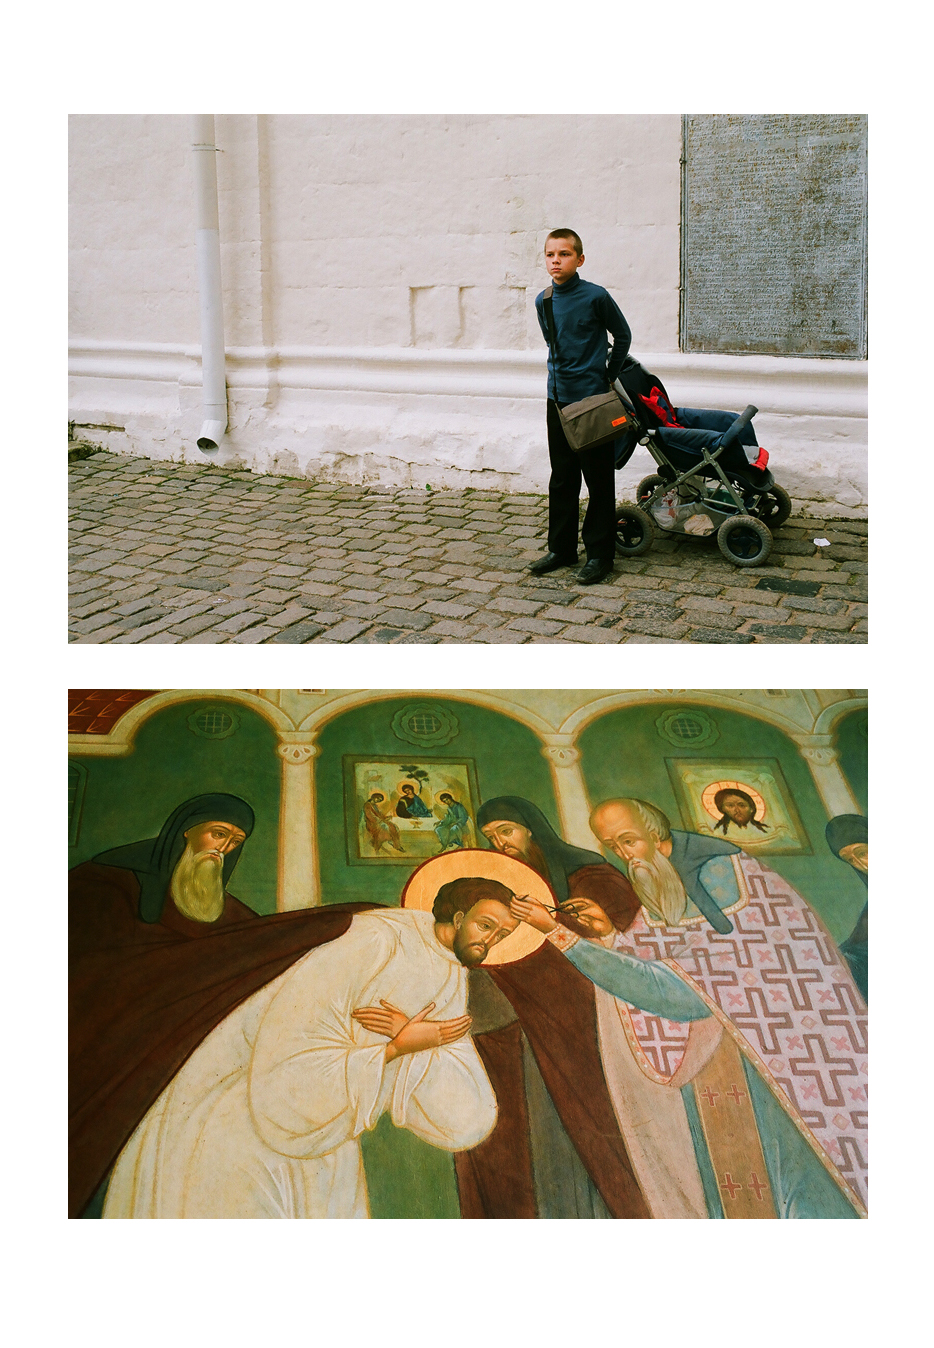 Gosha Rubchinskiy, Transfigurations. Courtesy of Pobeda Gallery